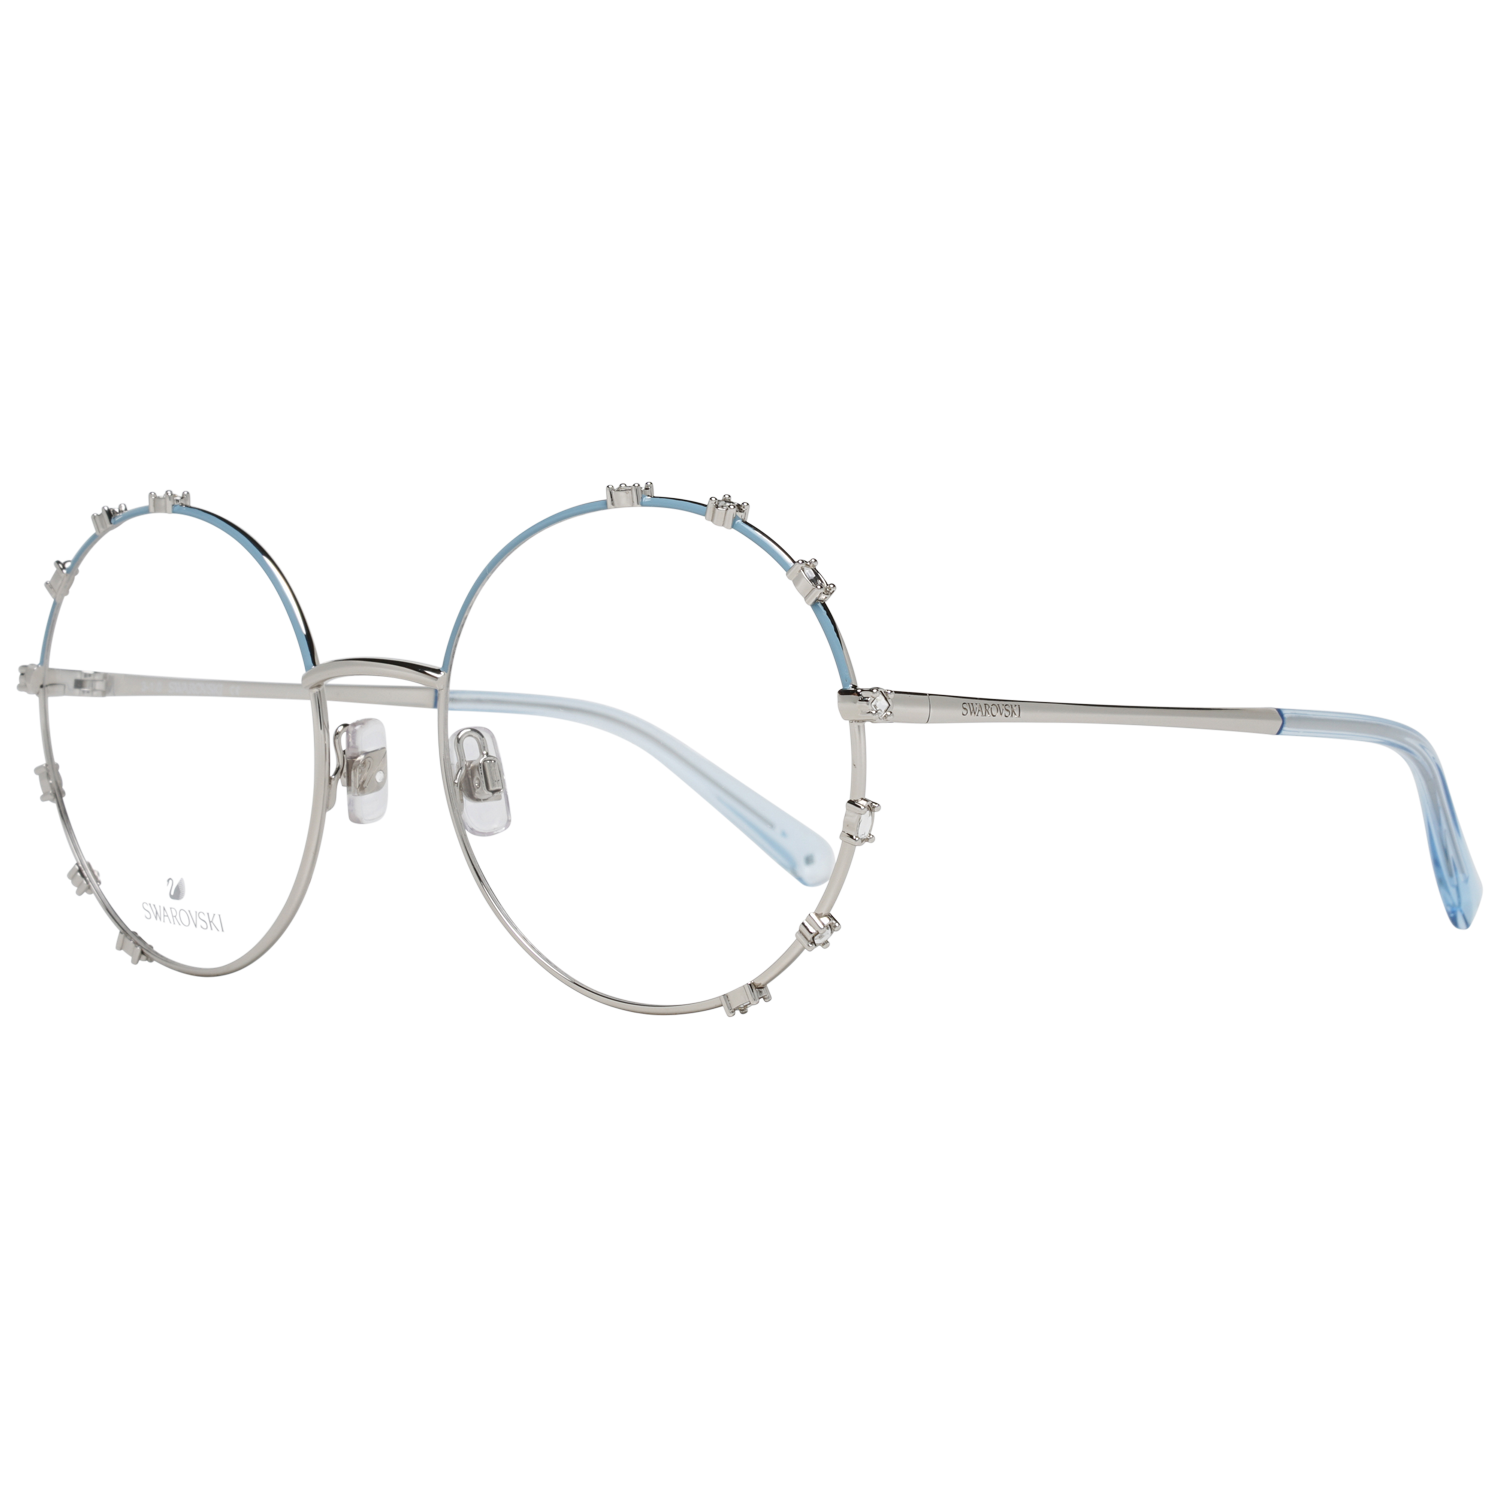 Swarovski Frames Swarovski Women Glasses Optical Frame SK5380 16A 57 Eyeglasses Eyewear UK USA Australia 